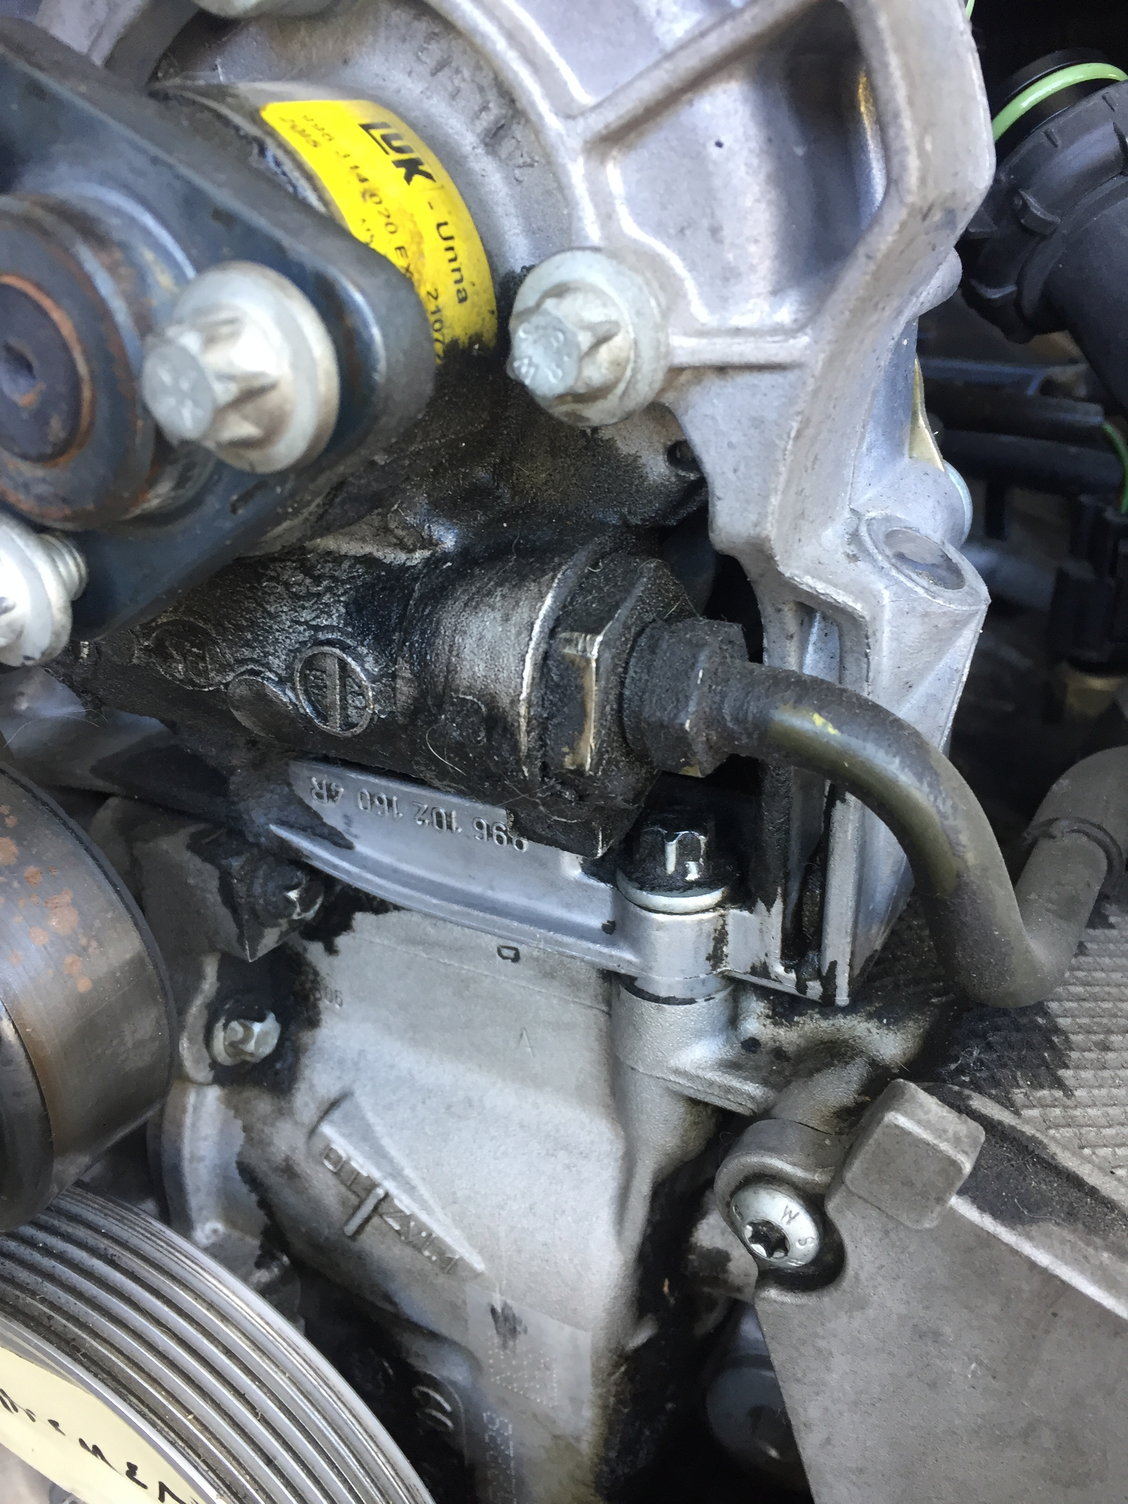 Power steering pump leak? How to remove? - Rennlist - Porsche